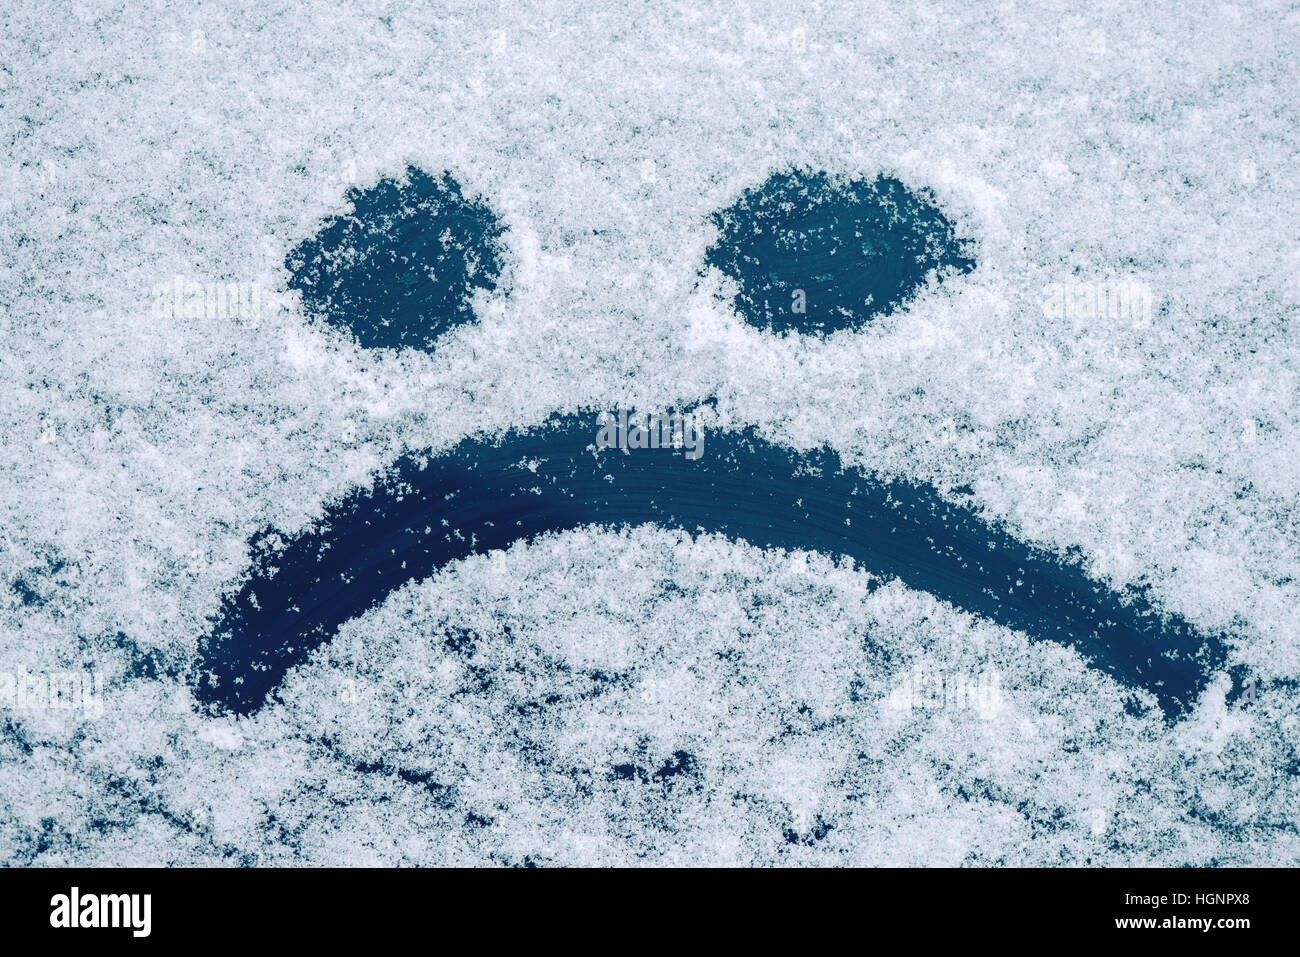 Traurige Smiley Emoticon Gesicht gezeichnet auf schneebedeckten Glas, Winter Saison Traurigkeit Konzept Stockfoto